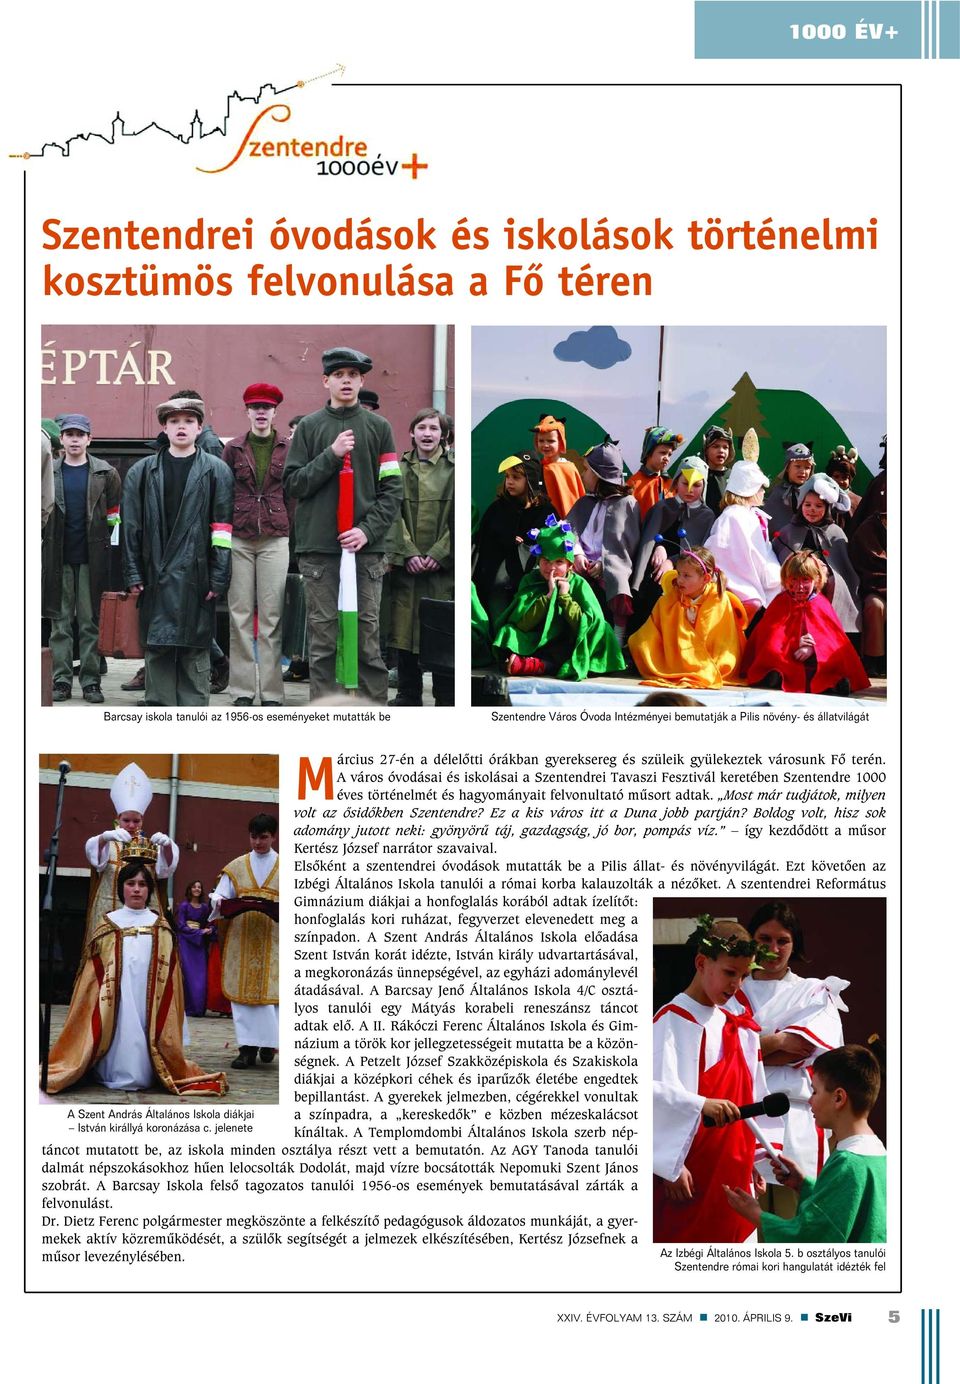 A város óvodásai és iskolásai a Szentendrei Tavaszi Fesztivál keretében Szentendre 1000 éves történelmét és hagyományait felvonultató mûsort adtak.